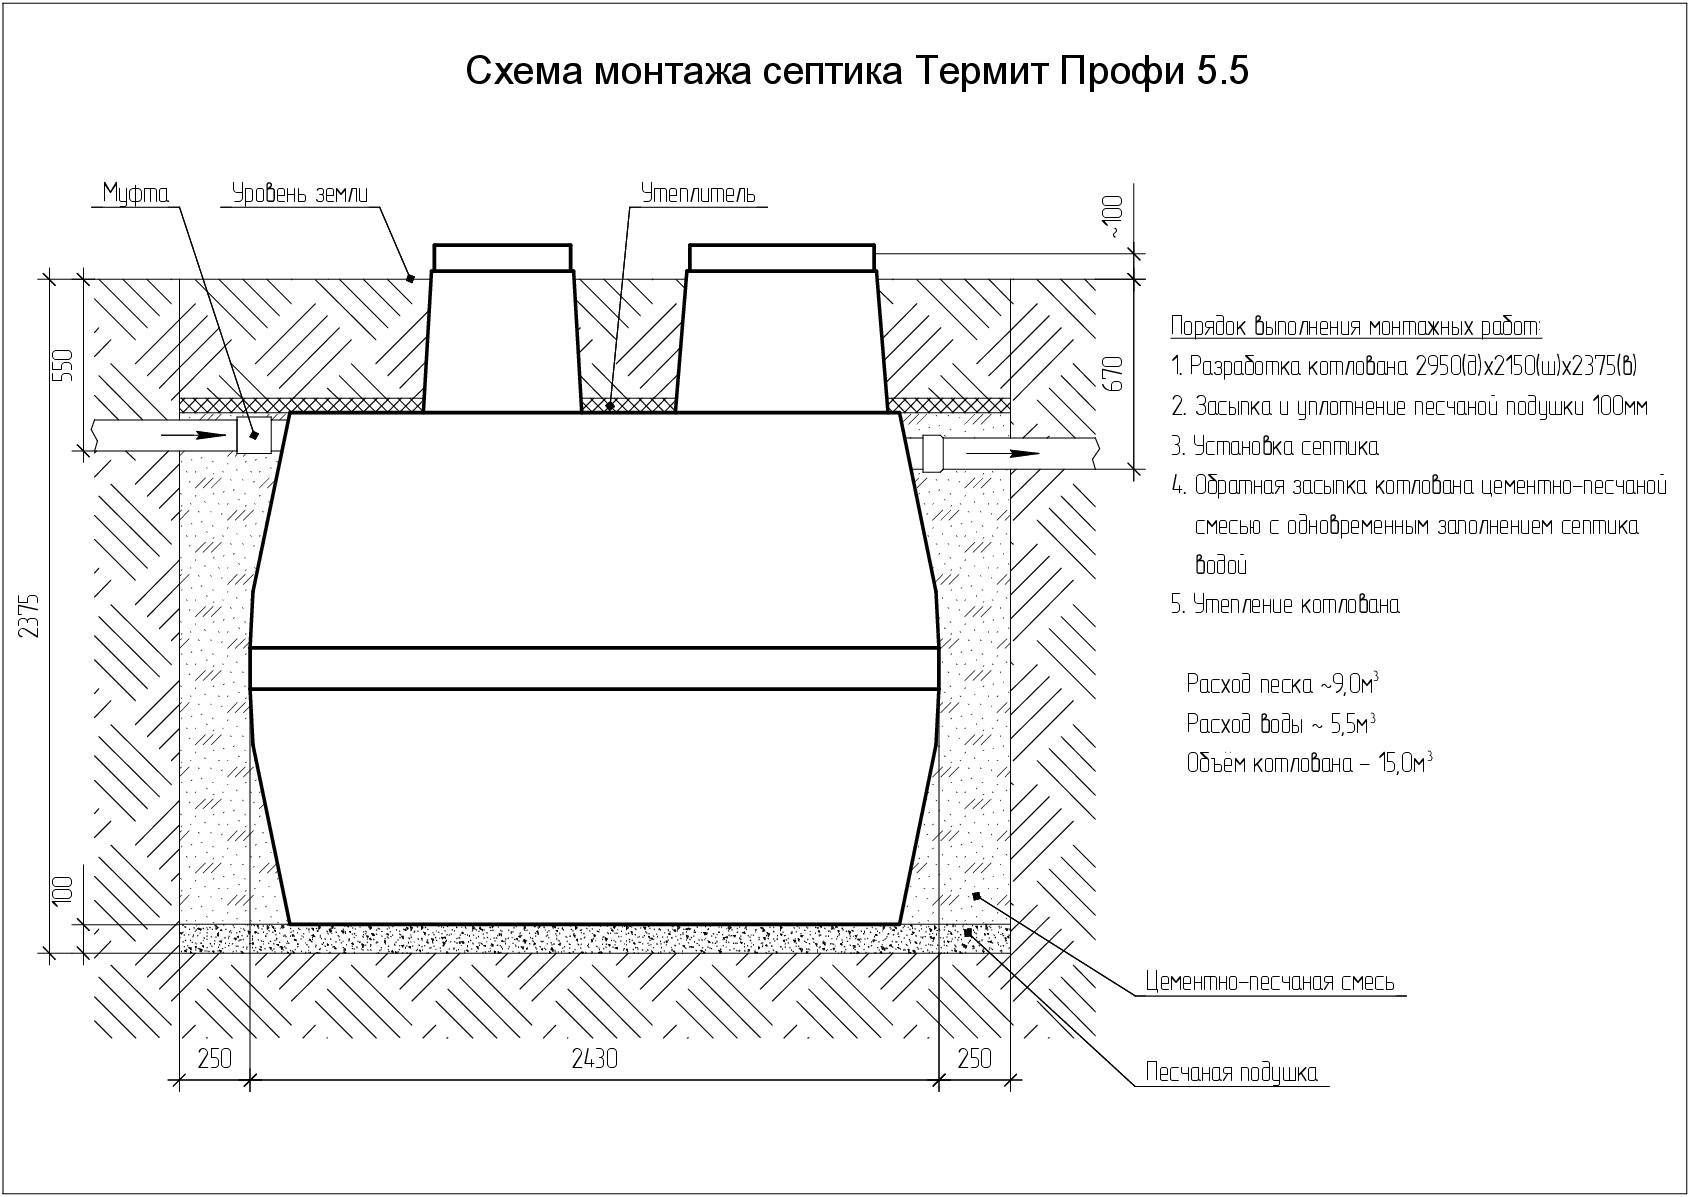 Правила установки и обслуживания септиков «термит»